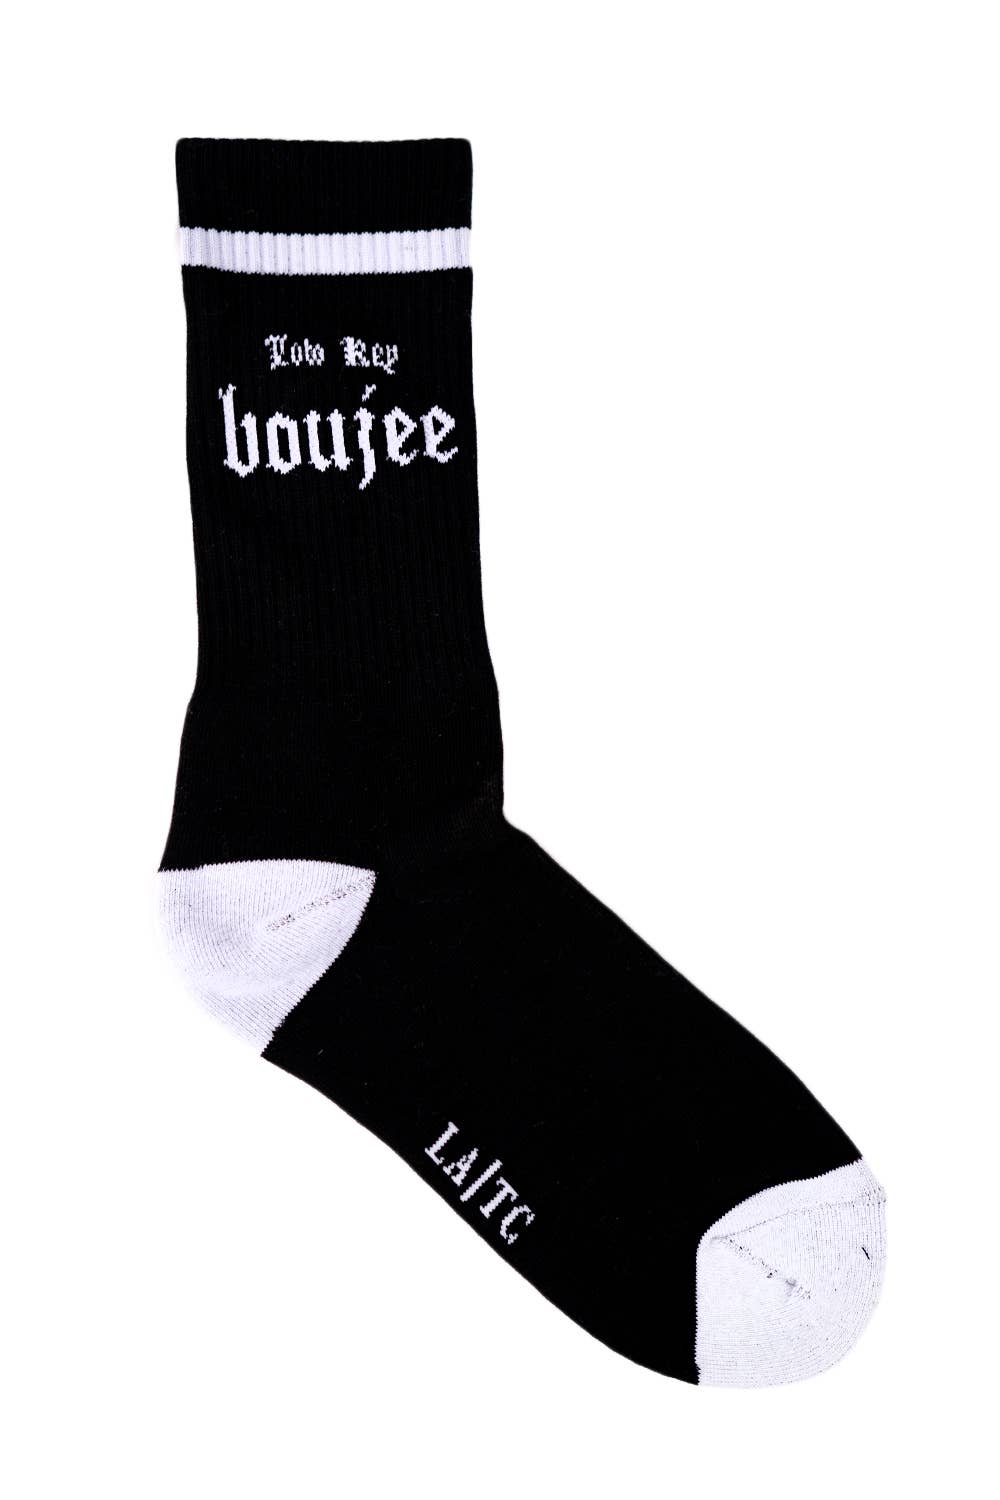 Low key Boujee sock